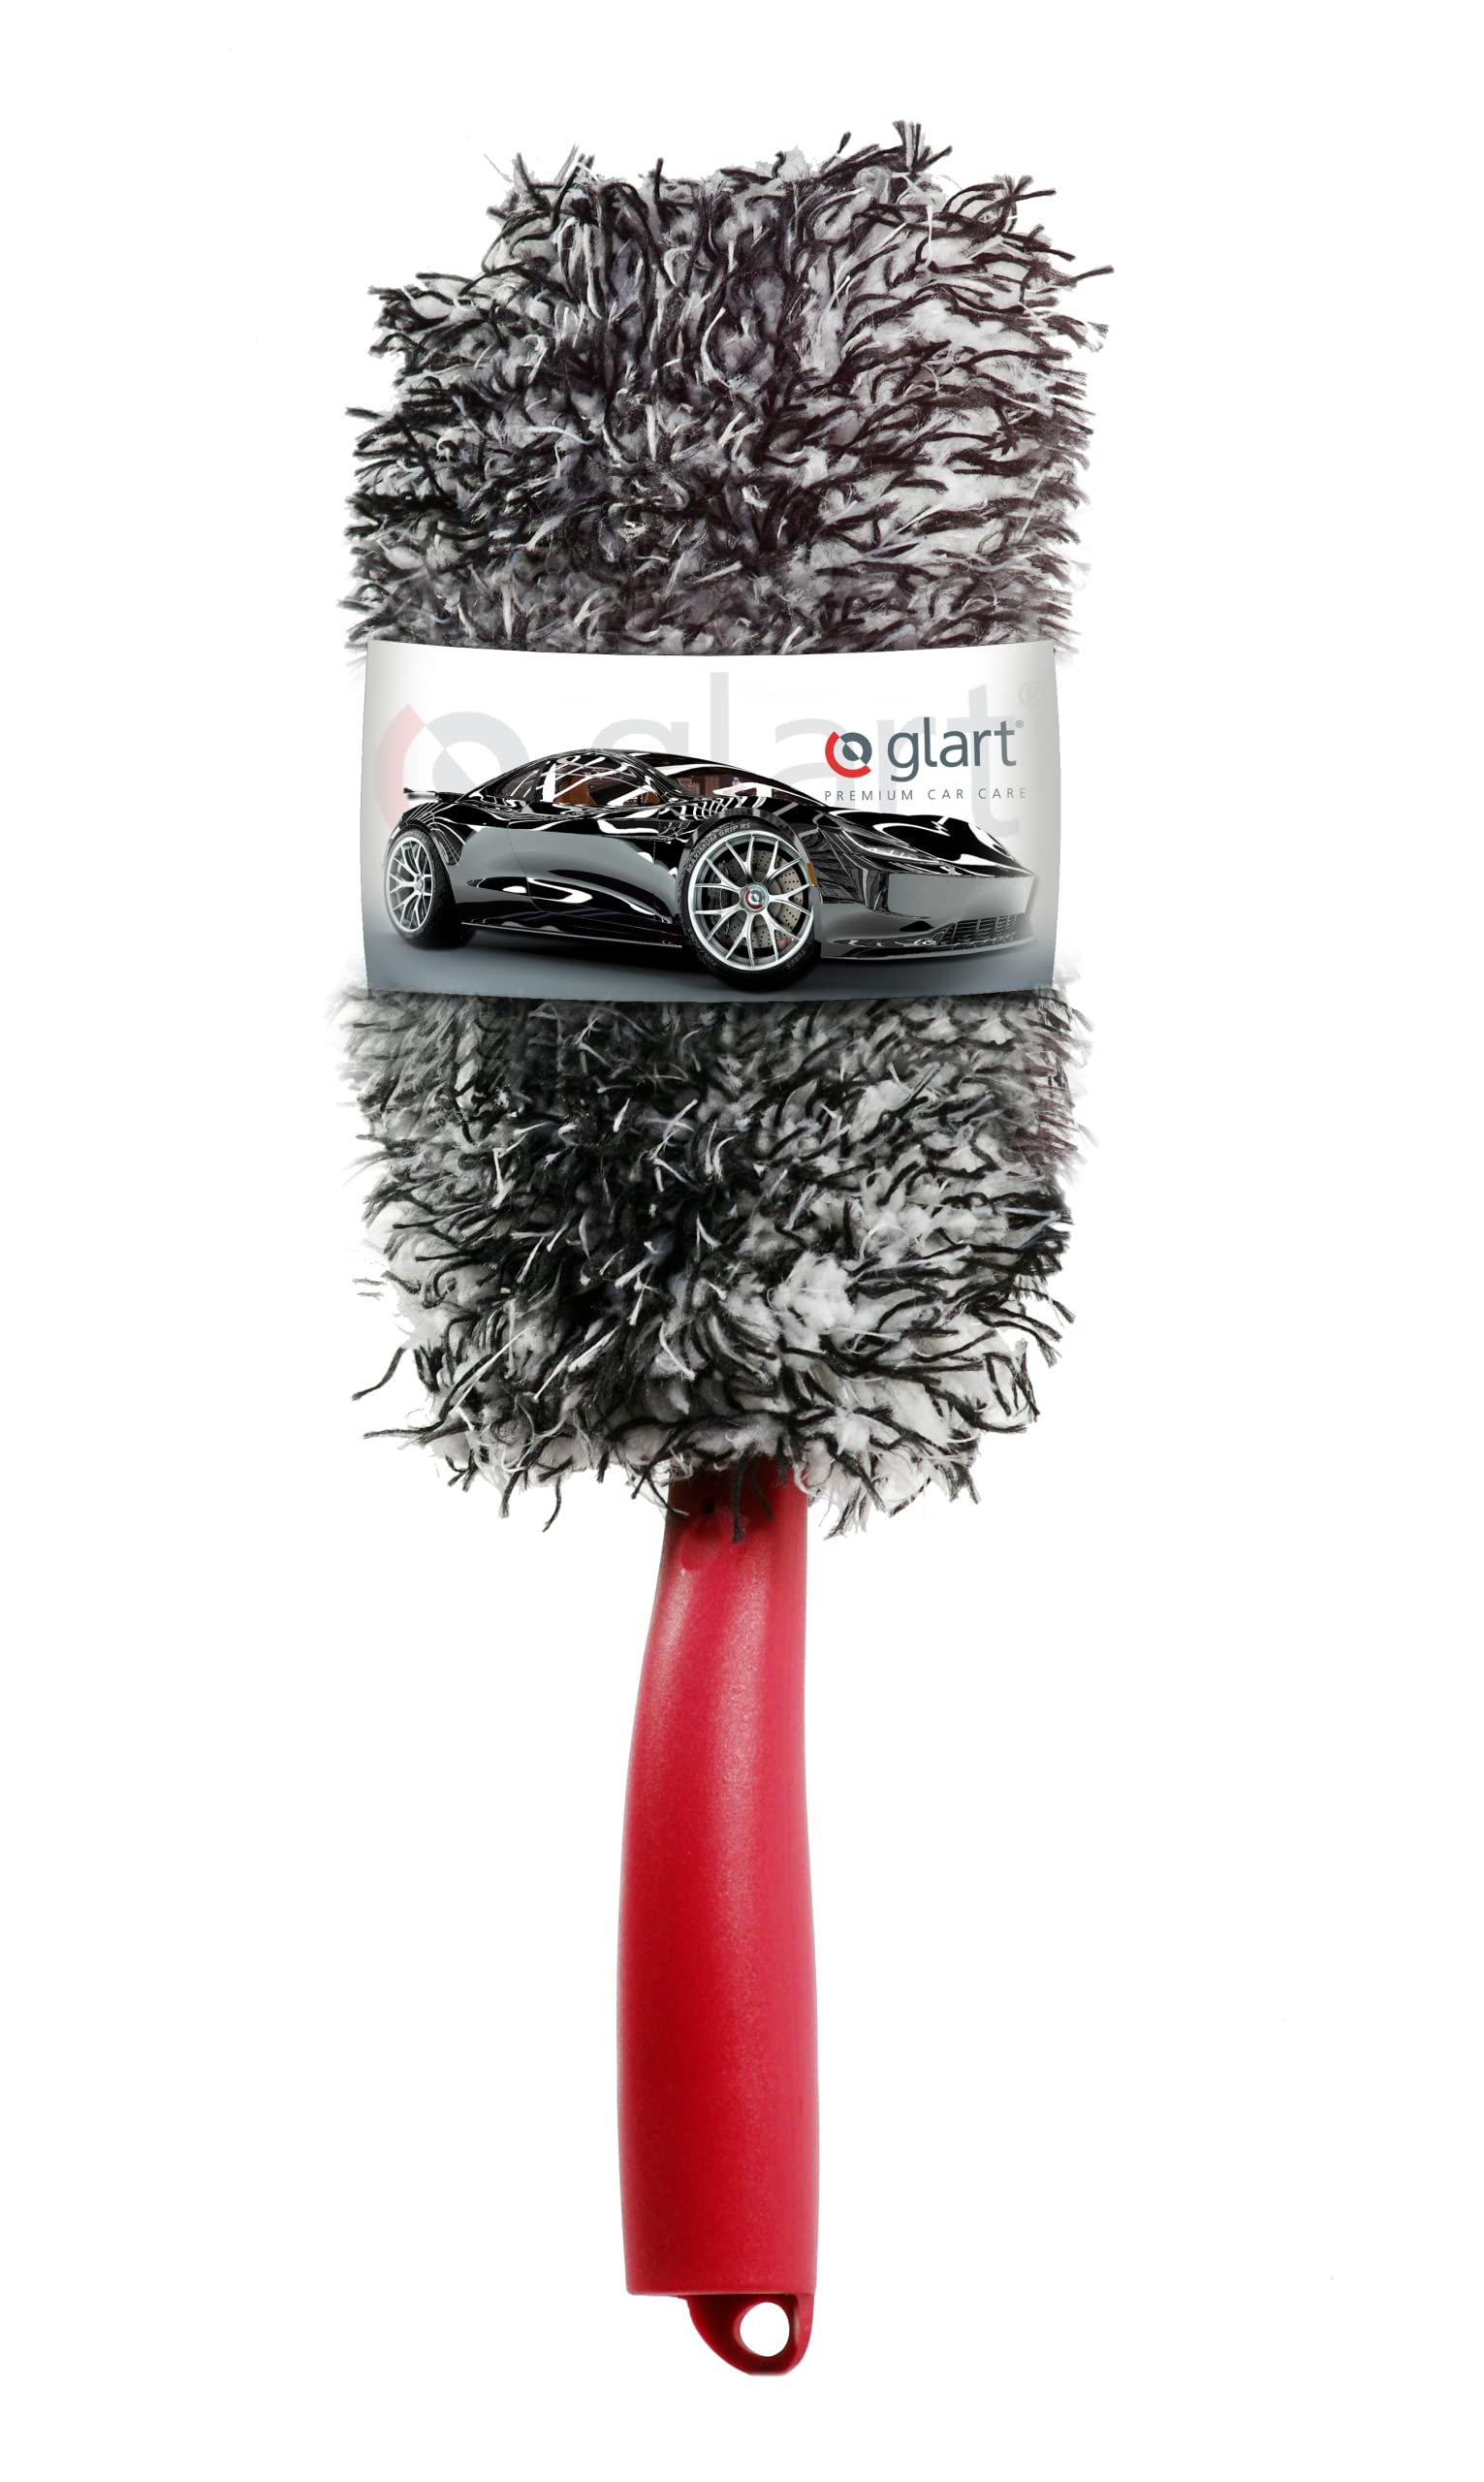 Glart 44FB2 Premium Mikrofaser Auto Felgenbürste mit abnehmbarem Bezug für teure Felgen - Autopflege für Alufelgen, Anwendung vor Reifenglanz. Von Felgenbett bis Speichen von Glart